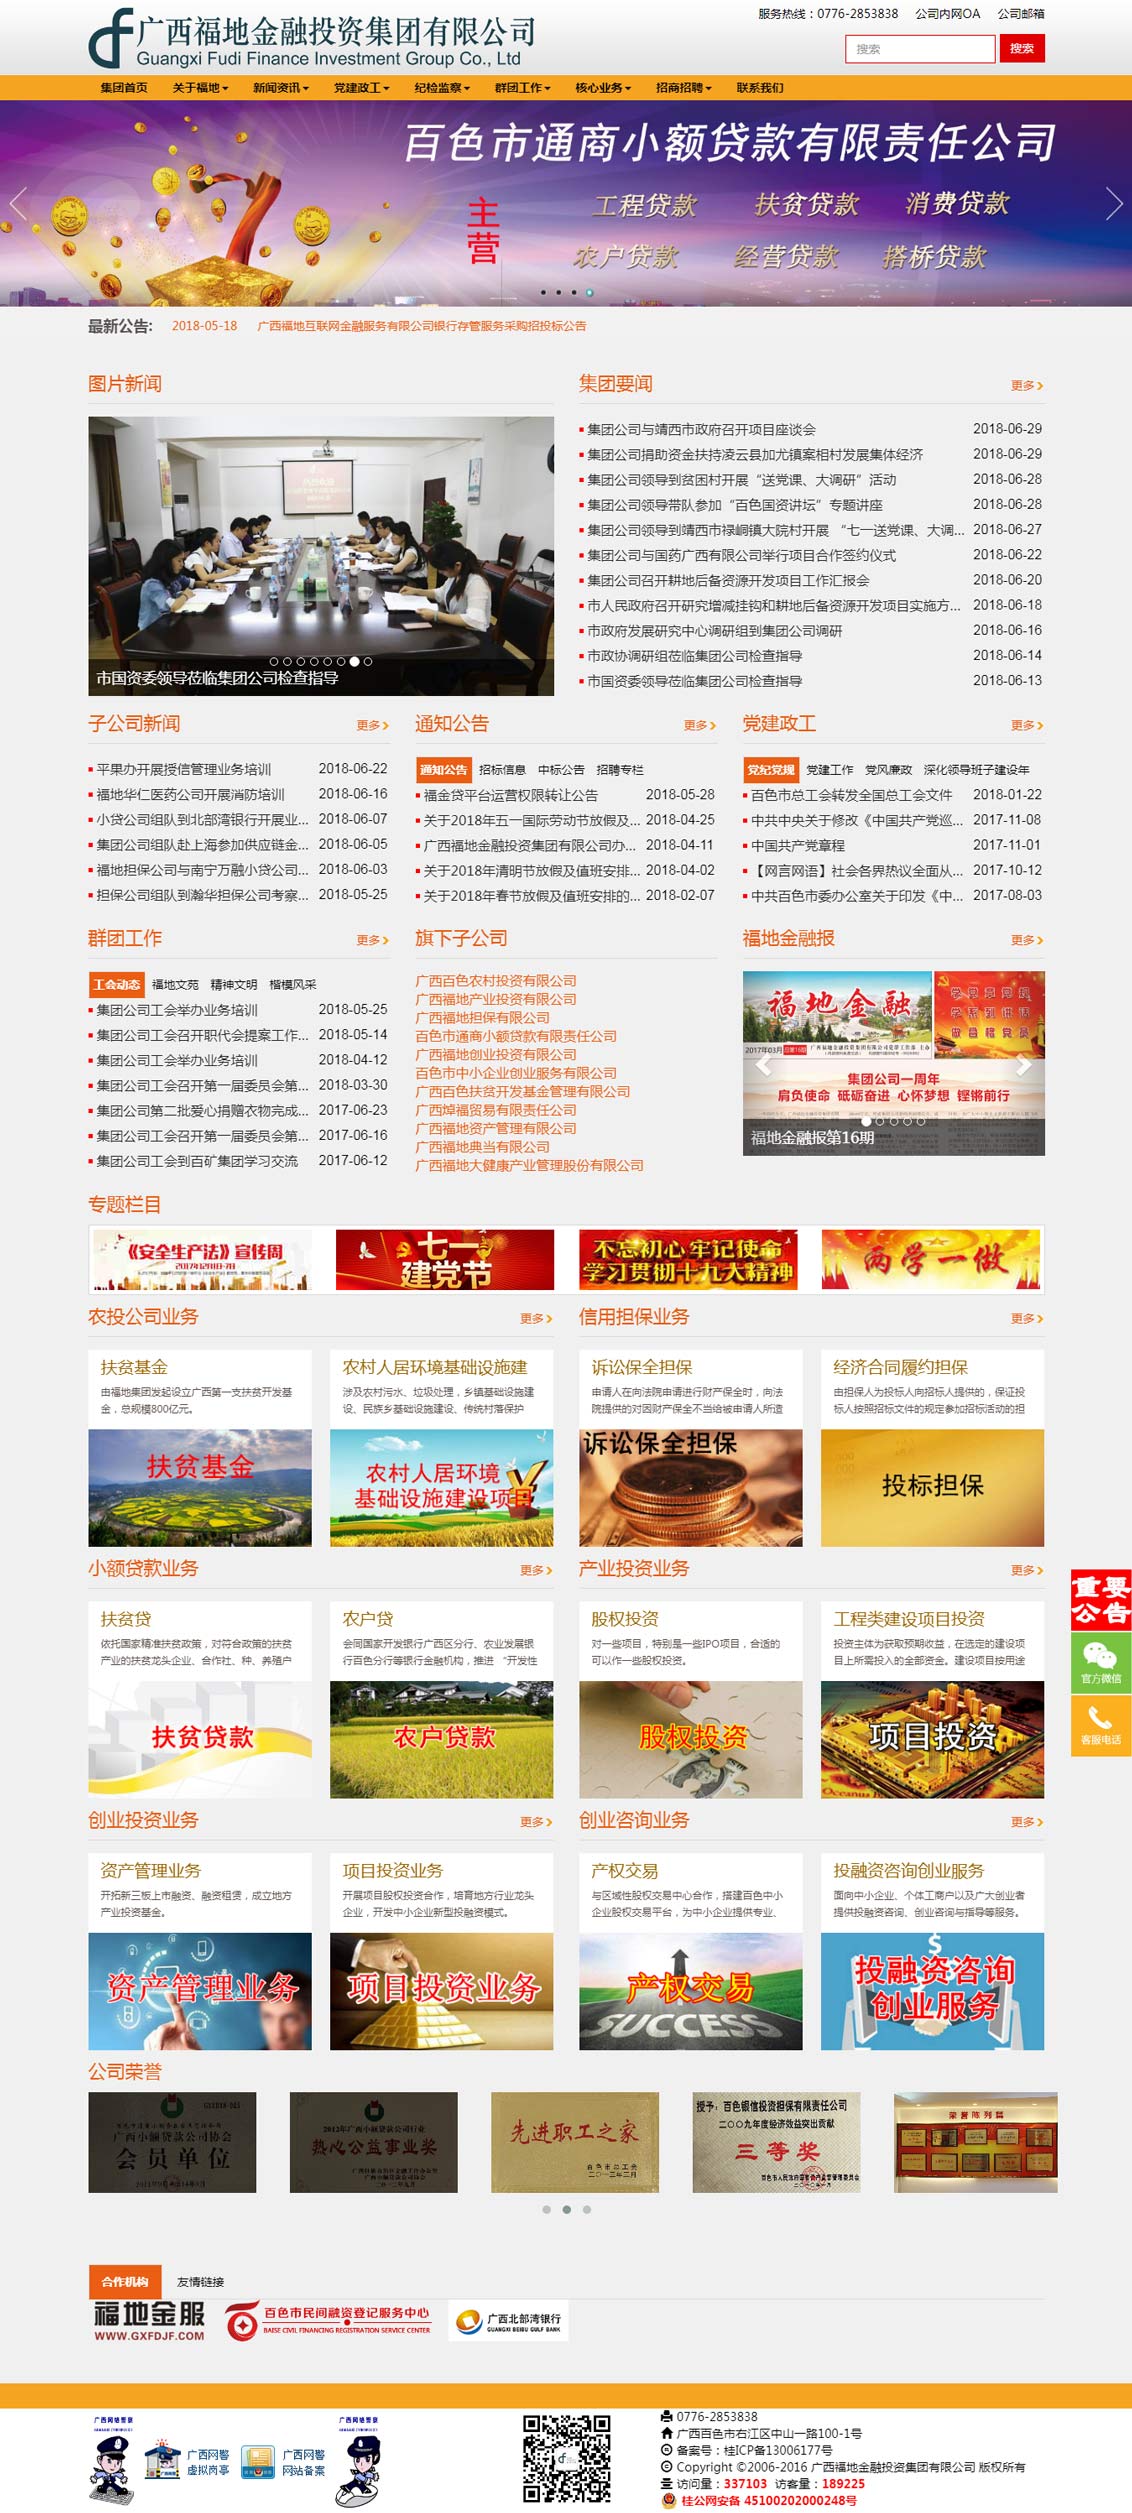 广西福地金融投资集团有限公司-万户网络设计制作网站